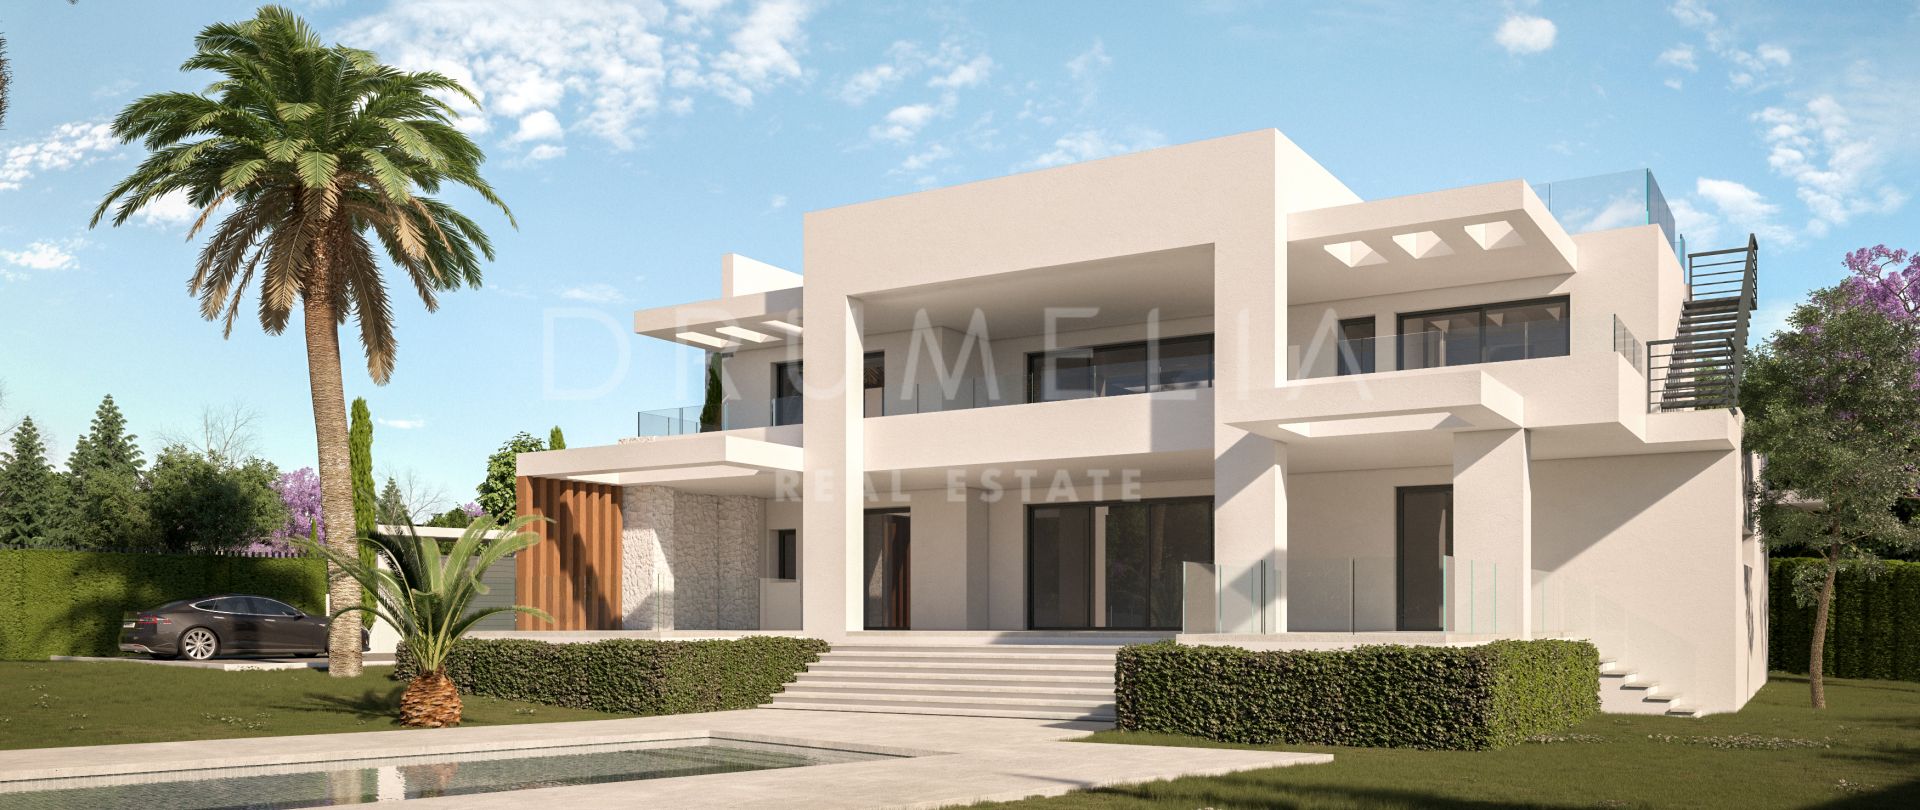 Neue moderne Villa am Strand mit Meerblick und separatem Apartment, Marbella Ost